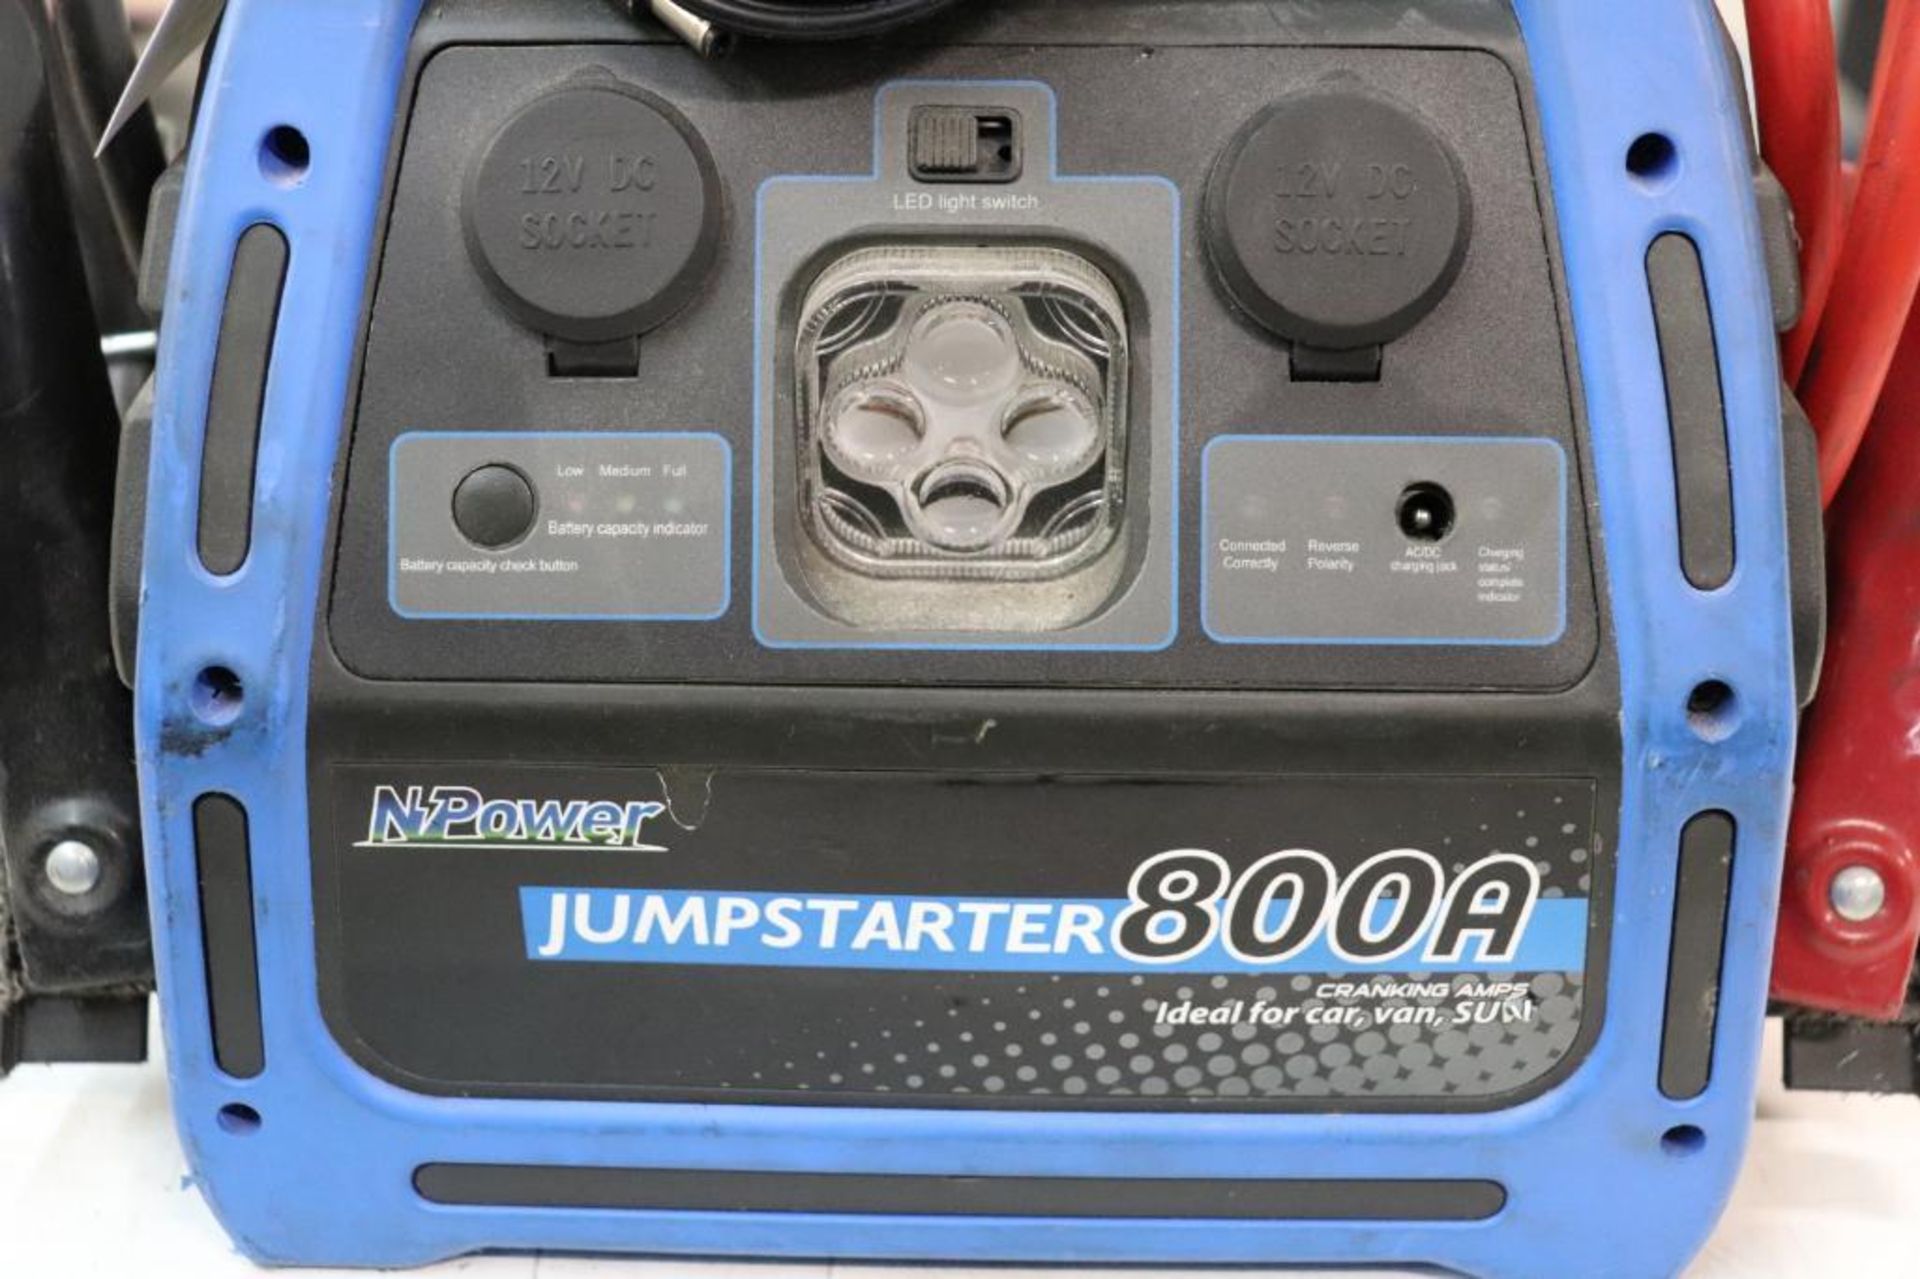 Npower 800A jumpstarter - Image 2 of 3